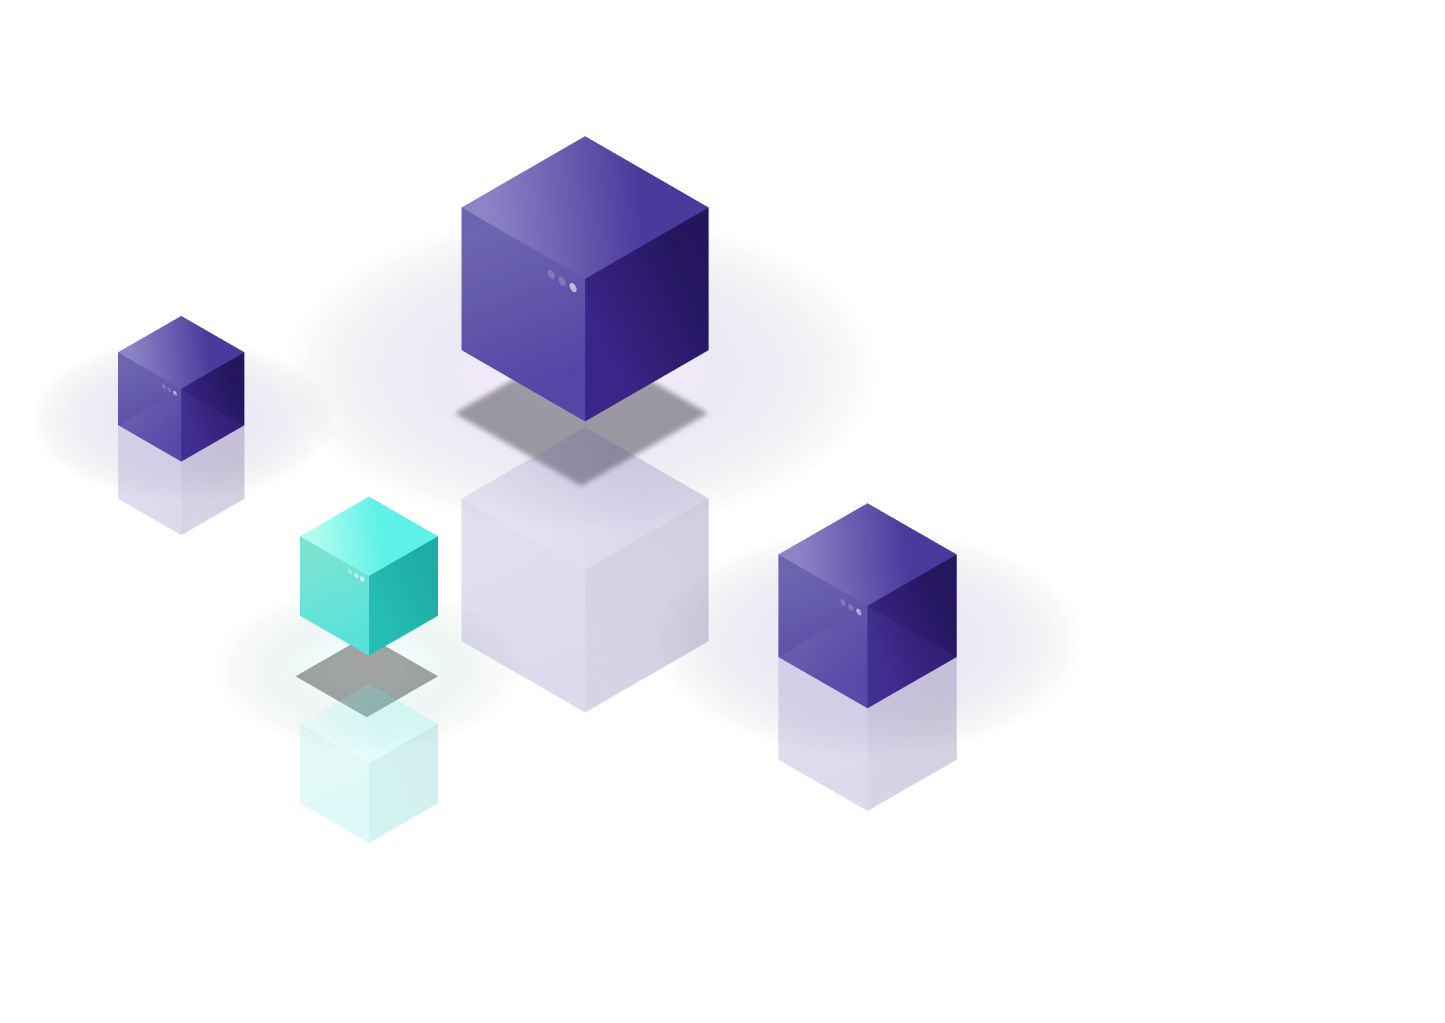 Groupement de formes cubiques en lévitation